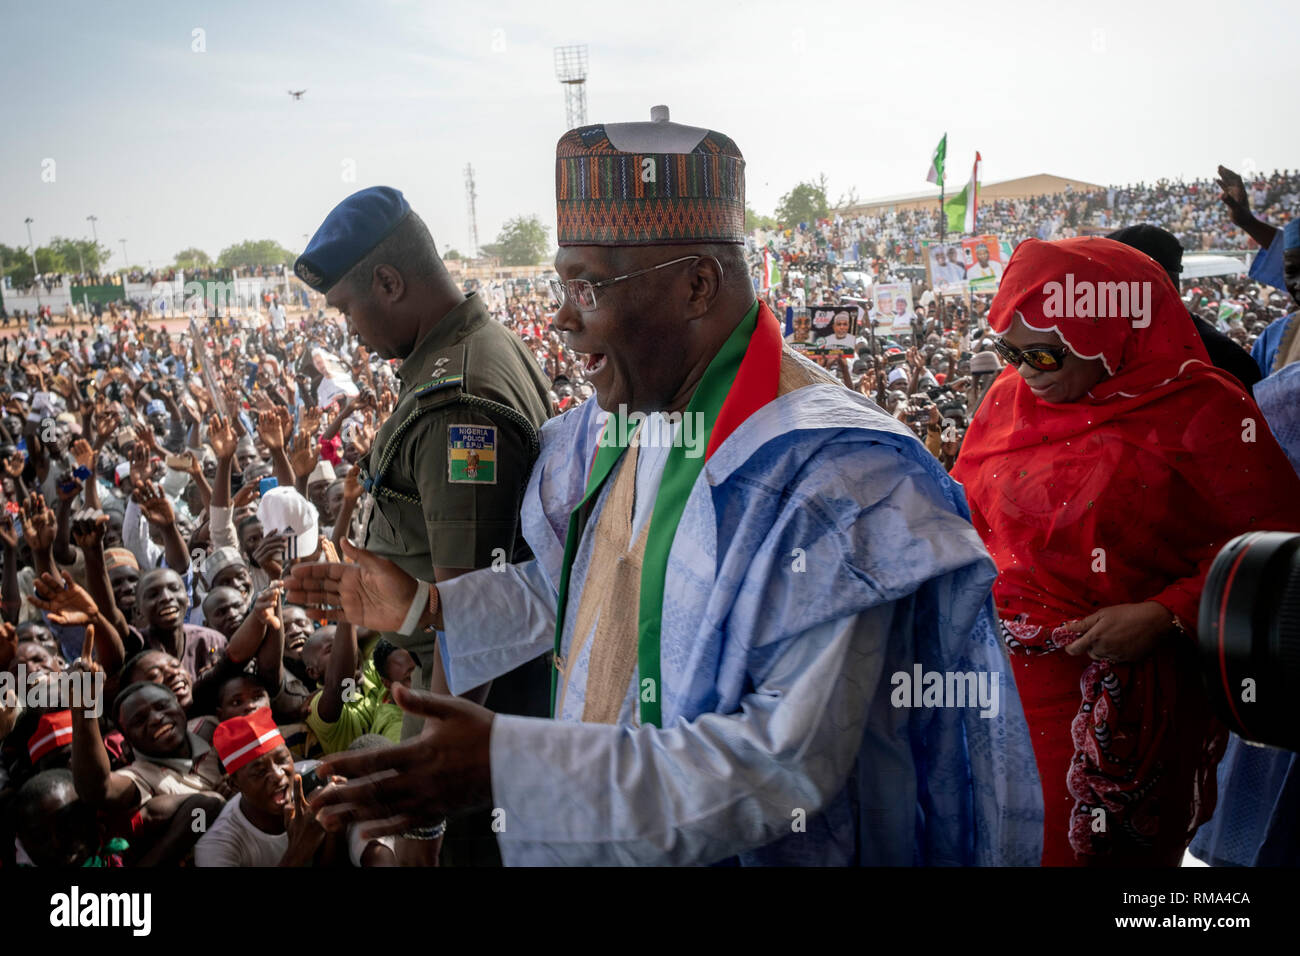 Il candidato presidenziale Atiku Abubakar al comizio elettorale in Damaturu, Yobe, Nigeria, 6 febbraio 2019 Foto Stock